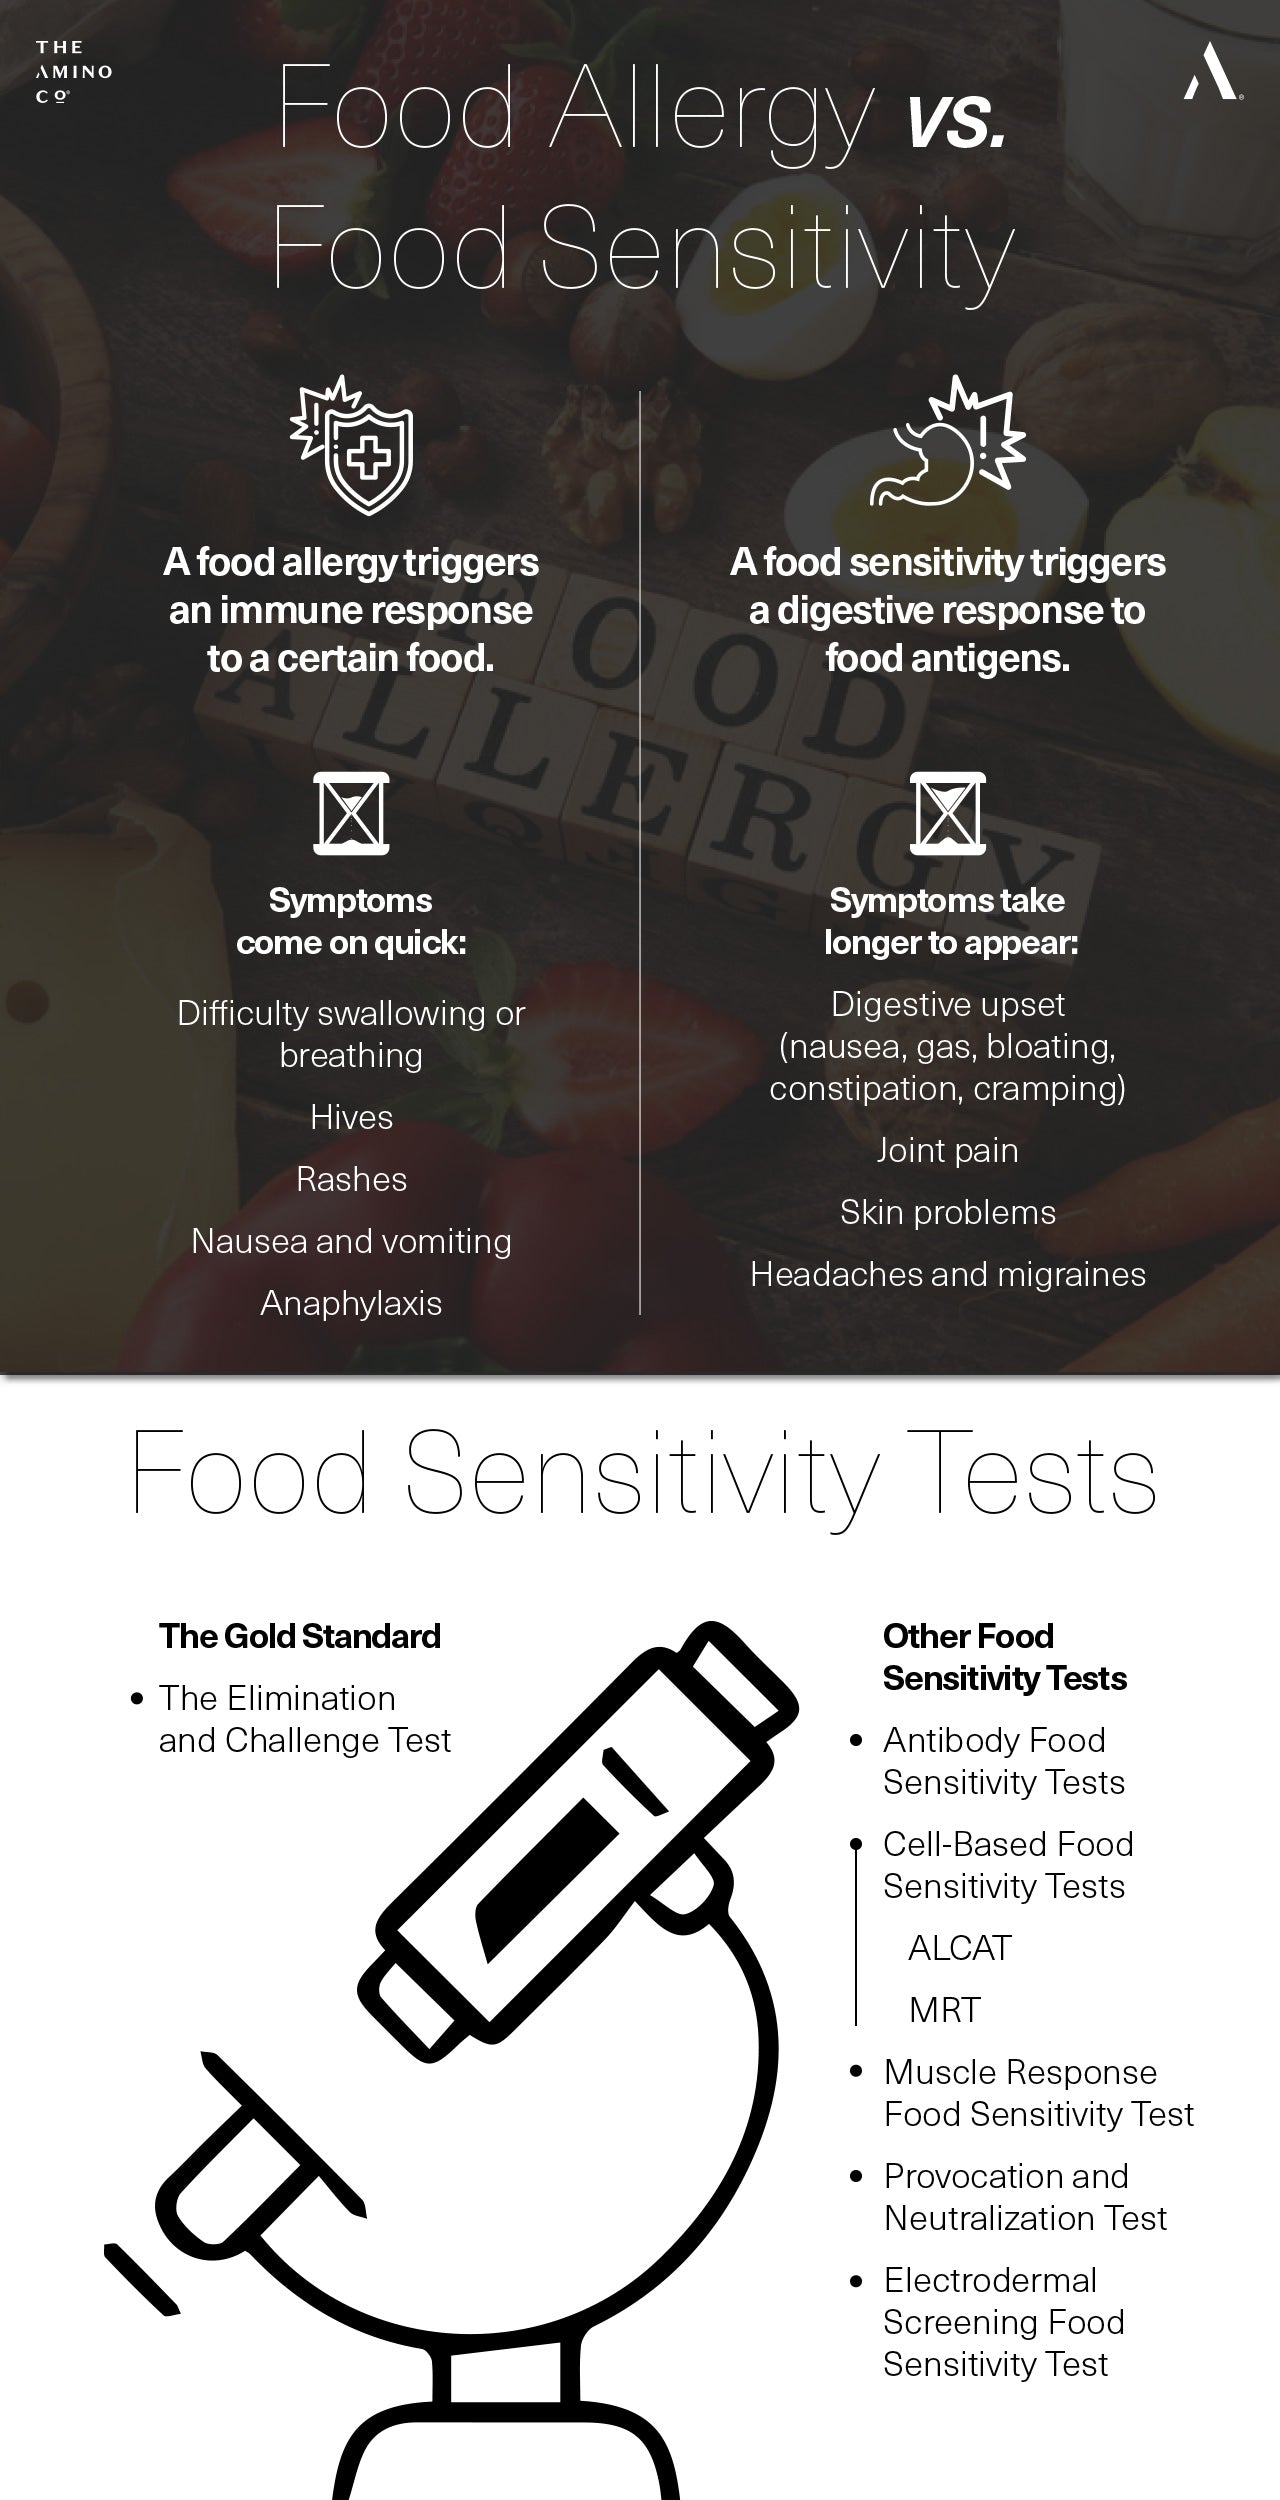 Food Allergy vs. Food Sensitivity